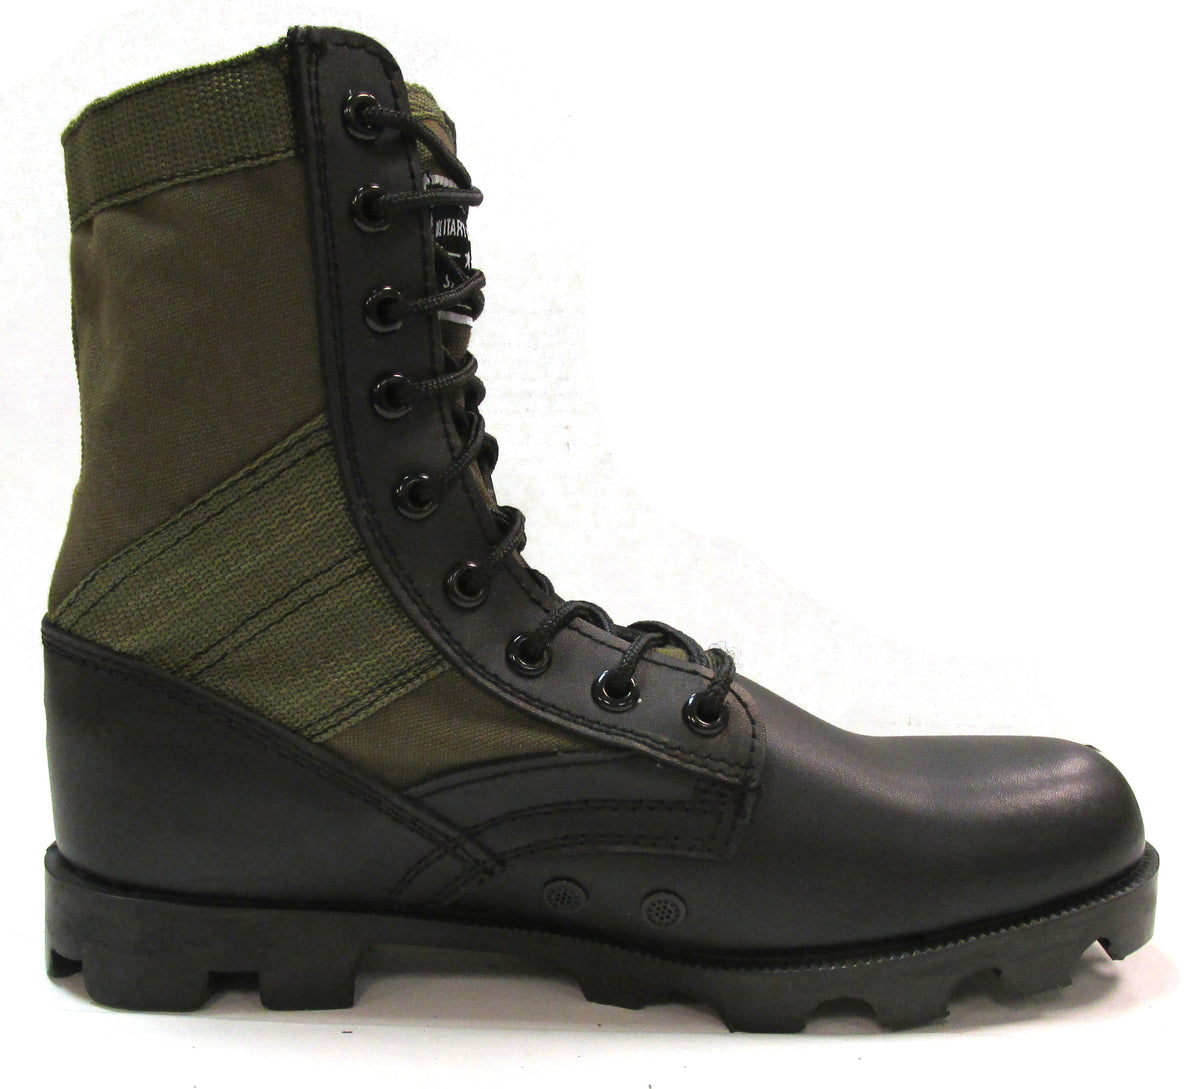 Military Uniform Supply O.D. Green Jungle Boots - Men's Combat Boots